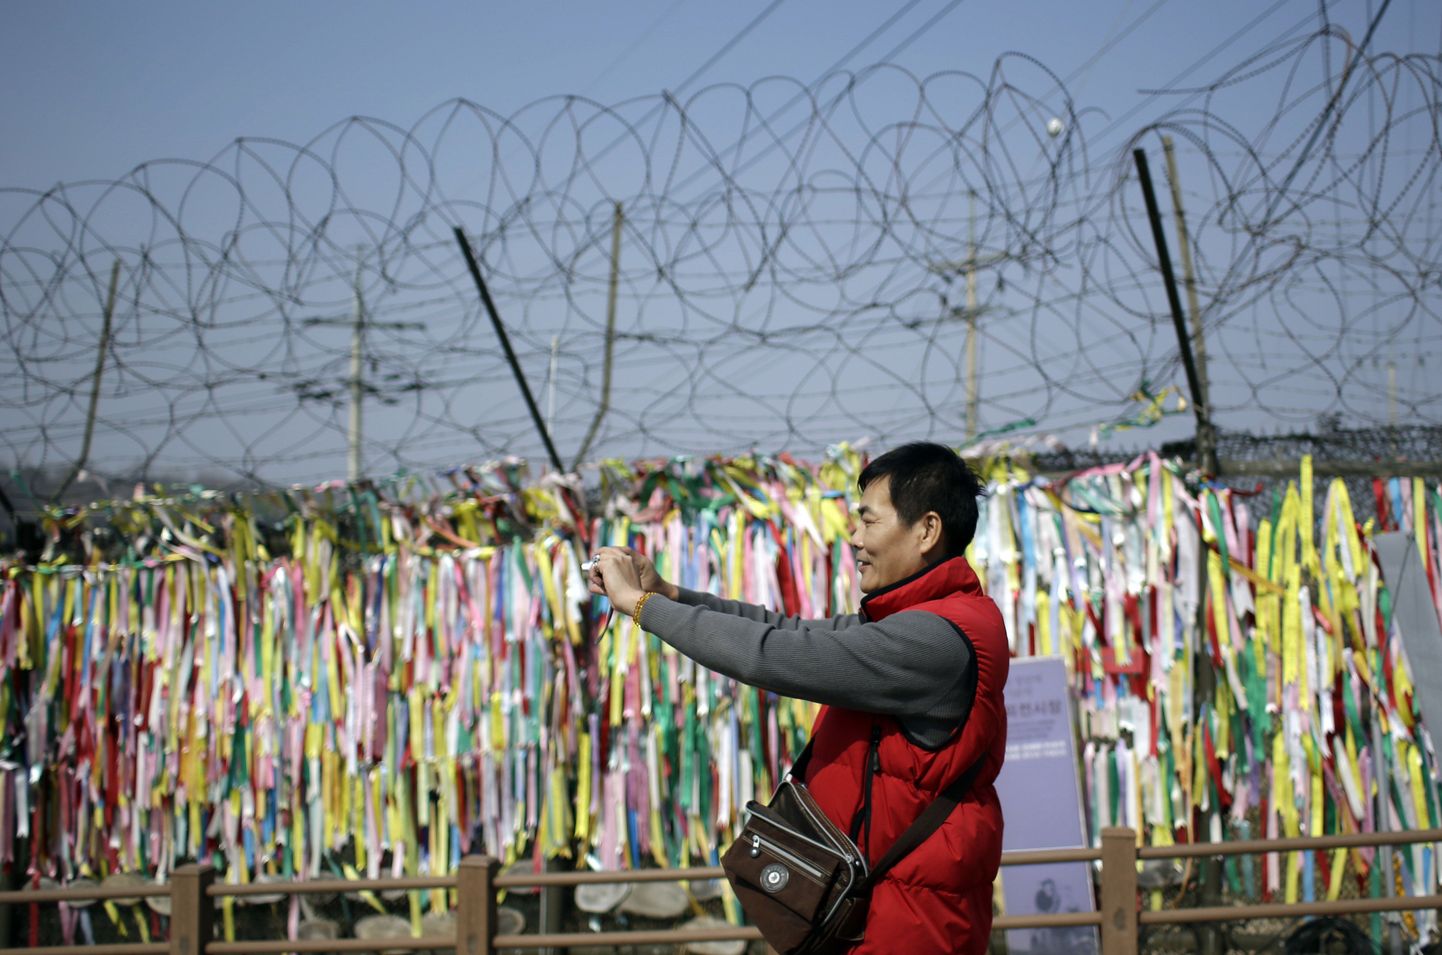 Mees pildistab okastraataial olevaid lindikesi, mille sõnumiks on soov kahe Korea ühinemisest.